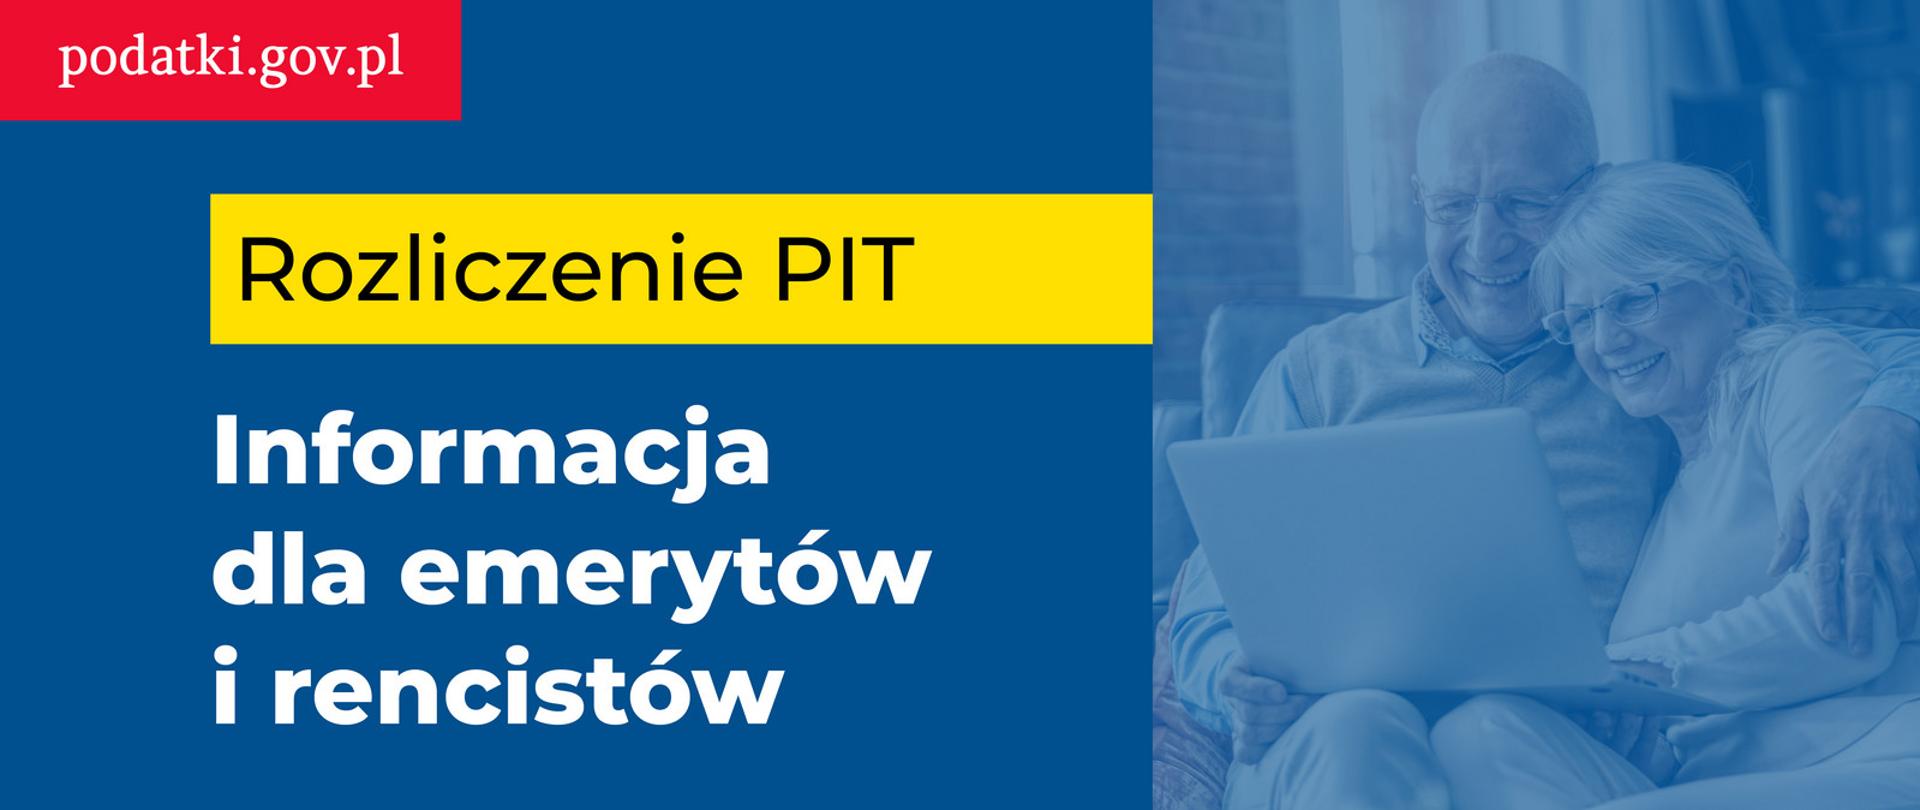 Dwie osoby przy komputerze, obok napisy: podatki.gov.pl. Rozliczenie PIT. Informacja dla emerytów i rencistów.